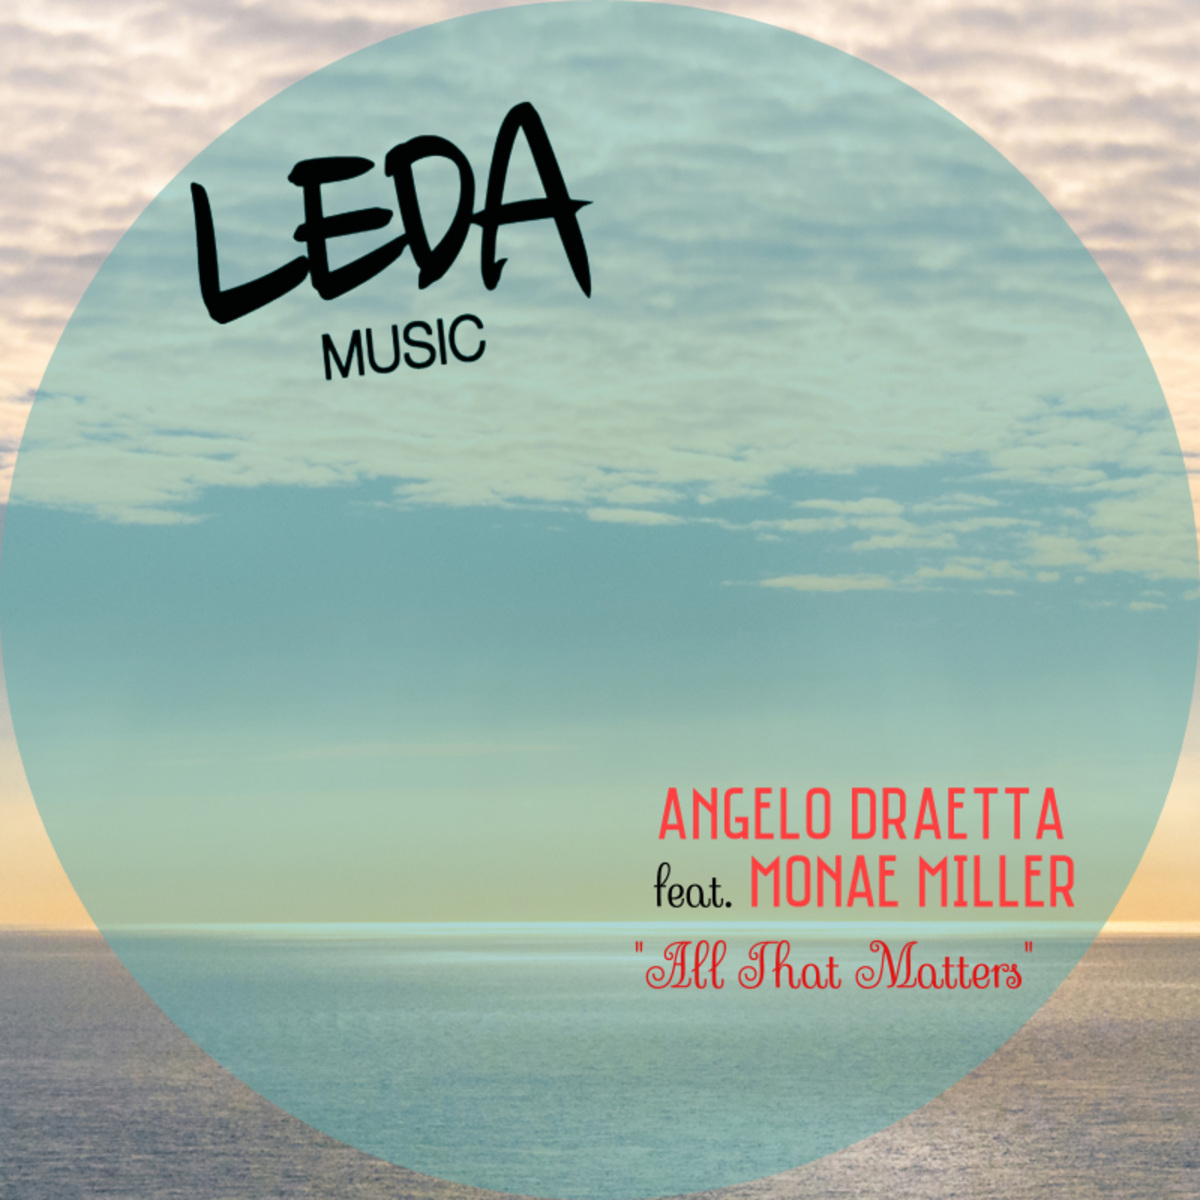 Angelo Draetta ft Monae Miller - All That Matters / Leda Music